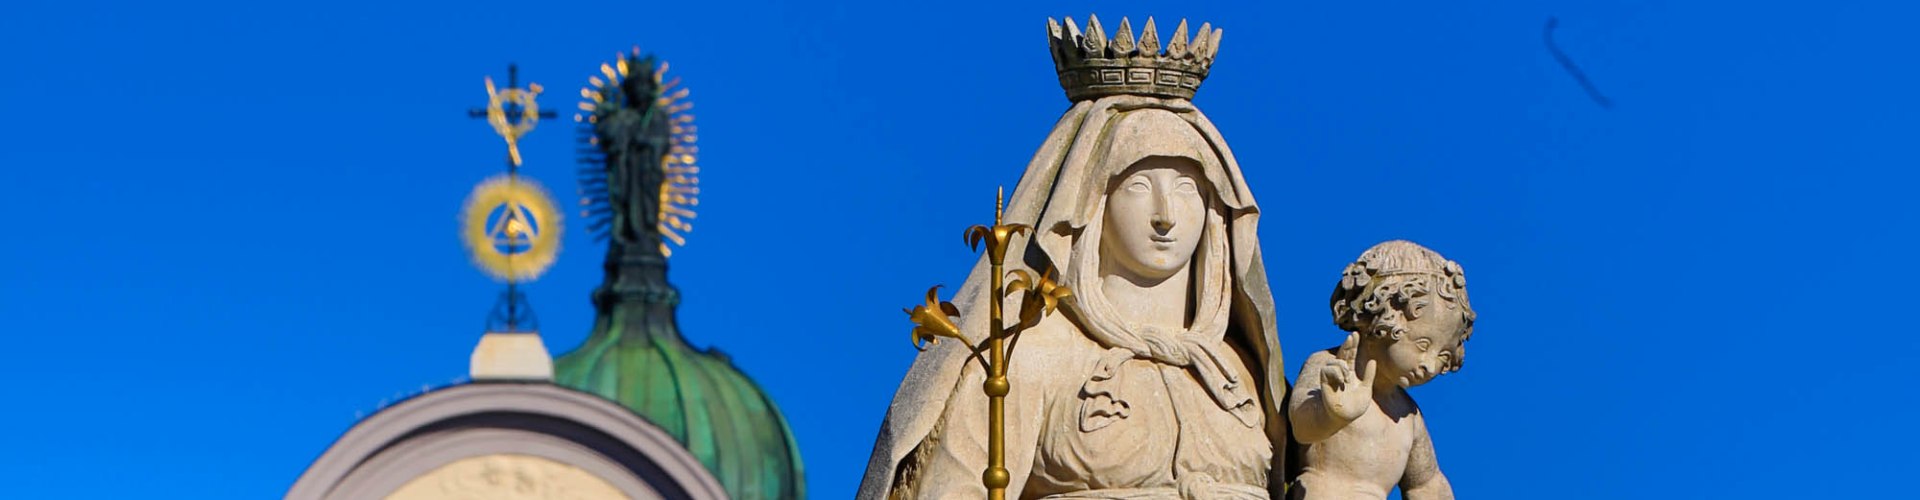 Statue einer Madonna auf blauem Himmel.